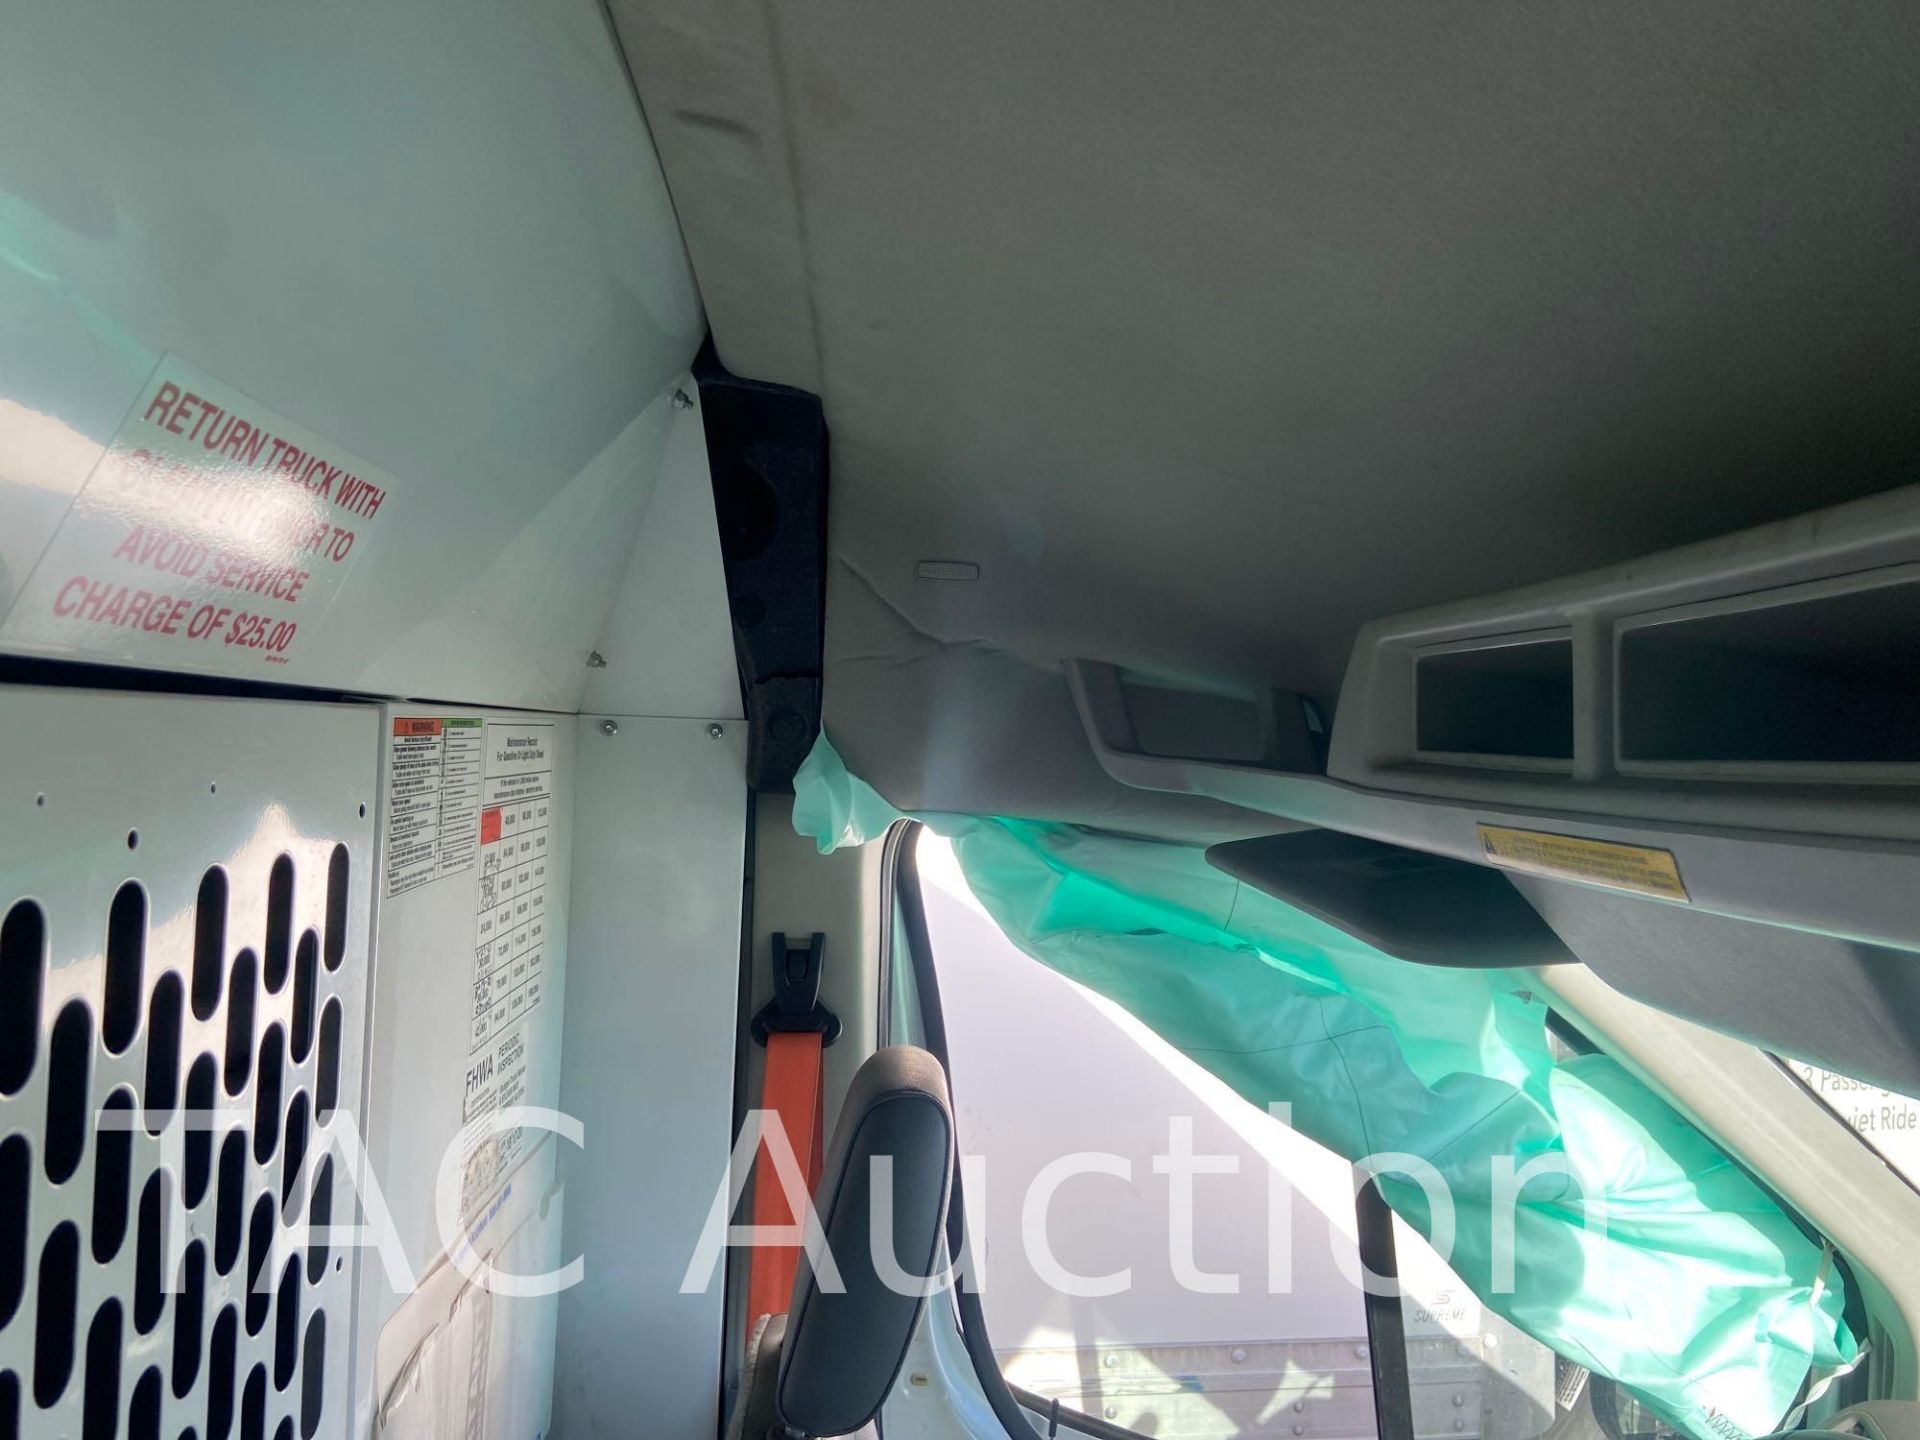 2019 Ford Transit 150 Cargo Van - Image 43 of 84